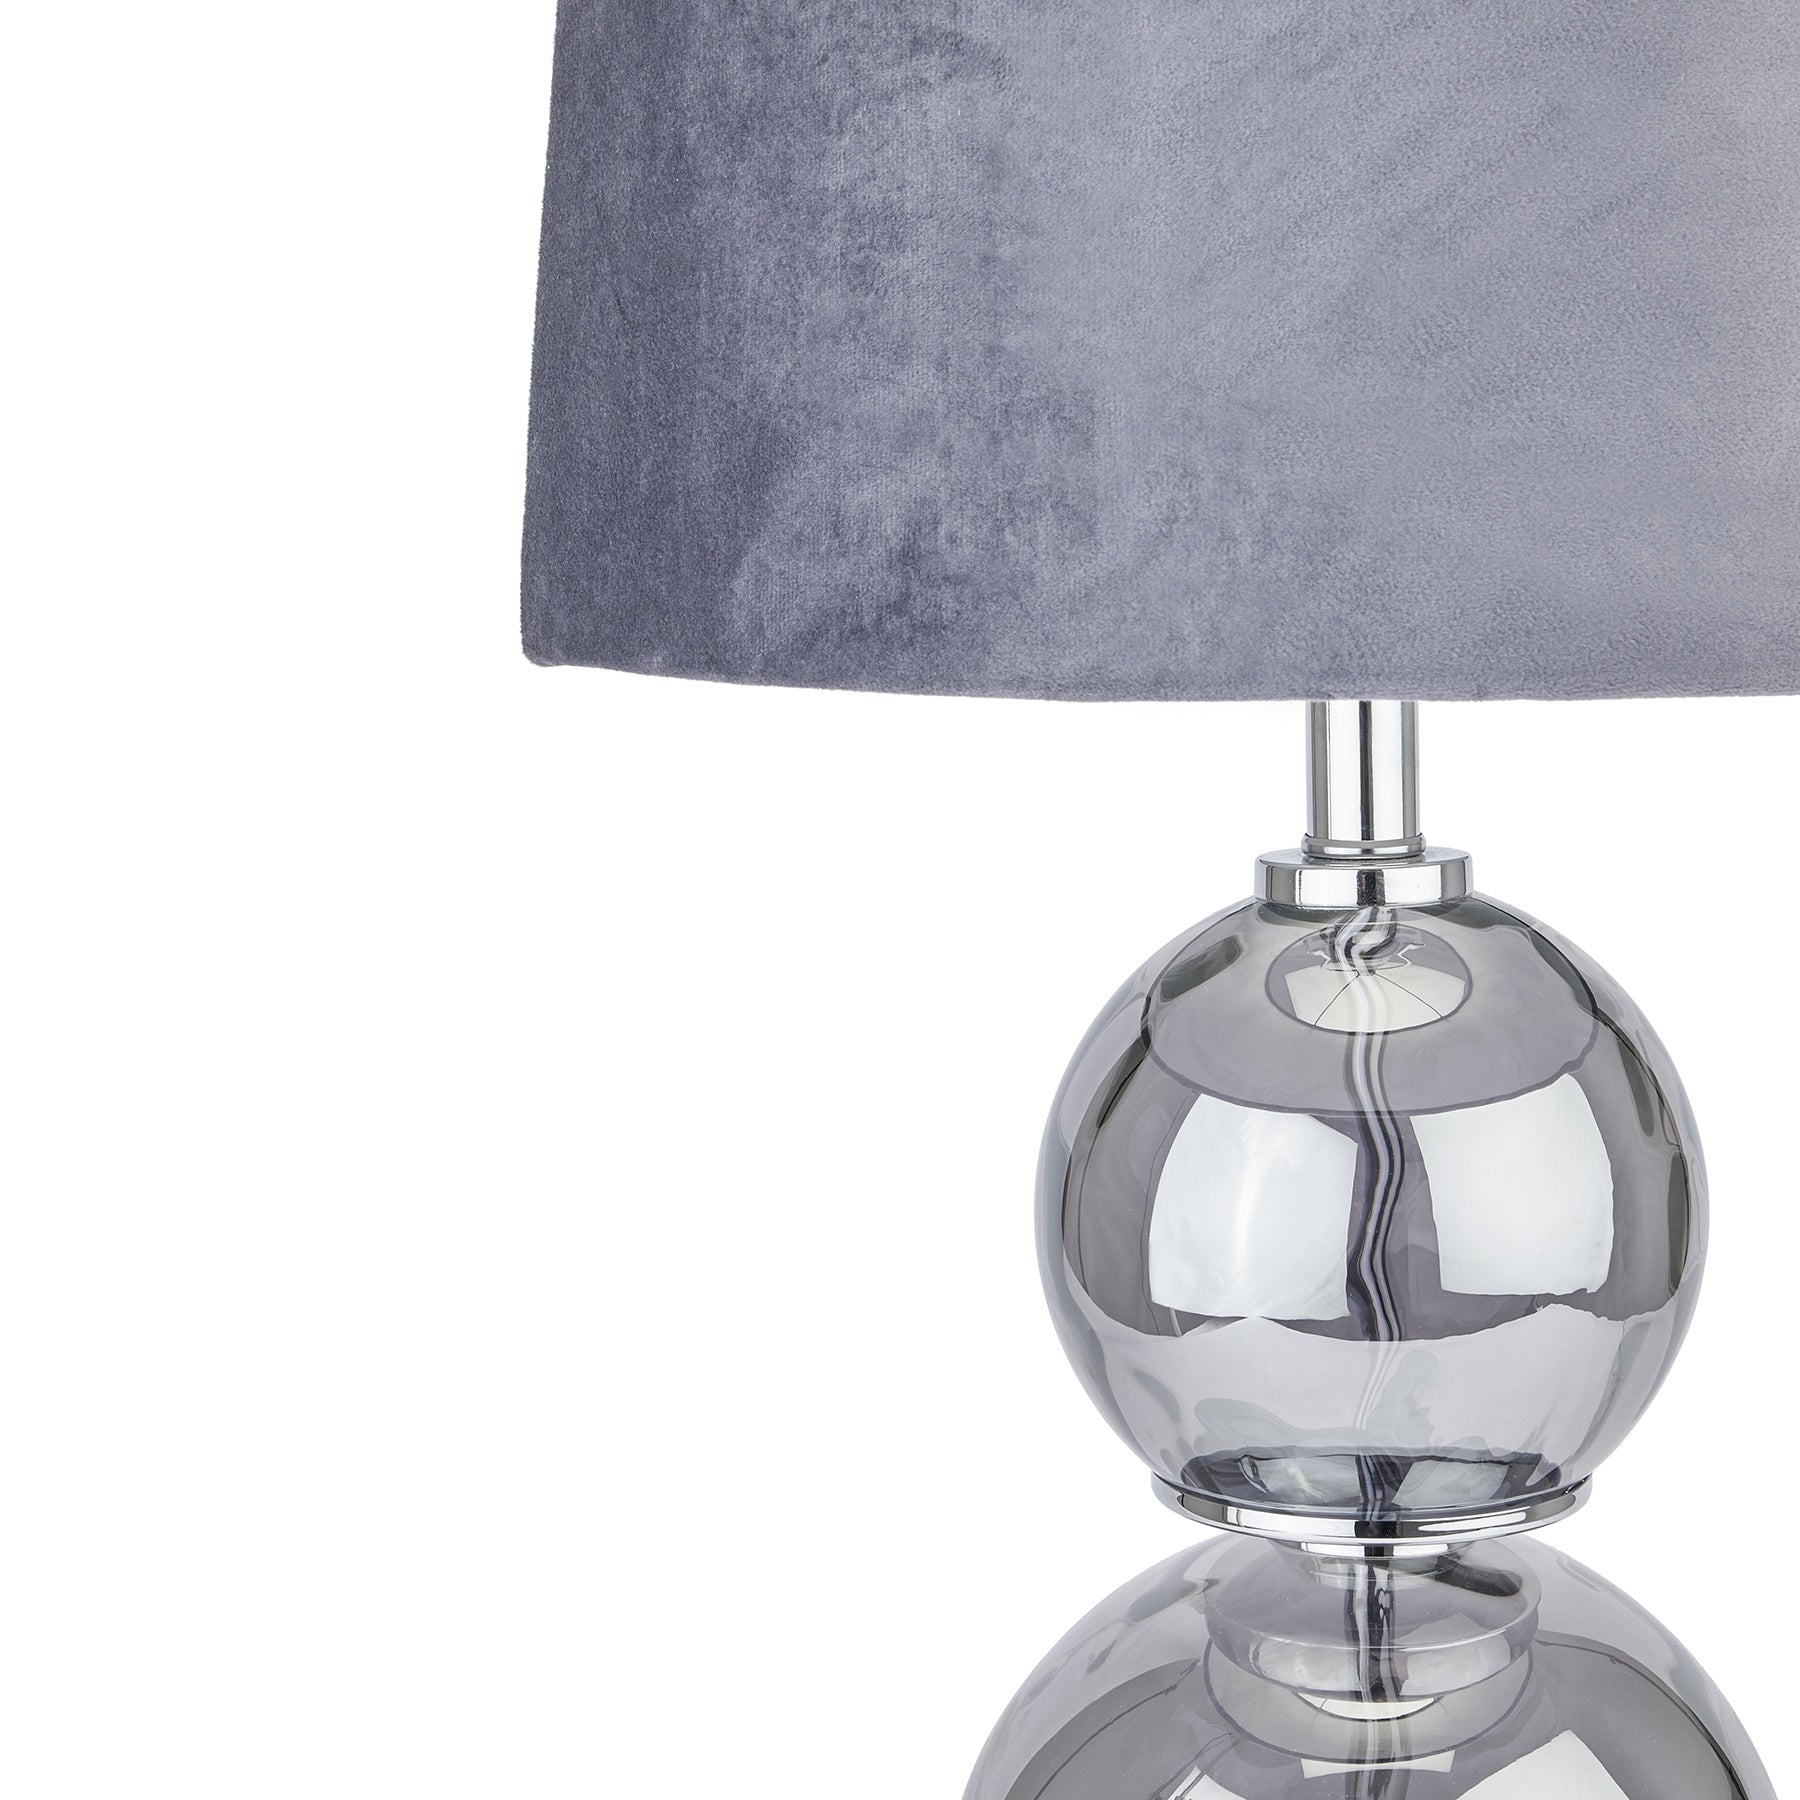 Shamrock Metallic Glass Lamp With Velvet Shade